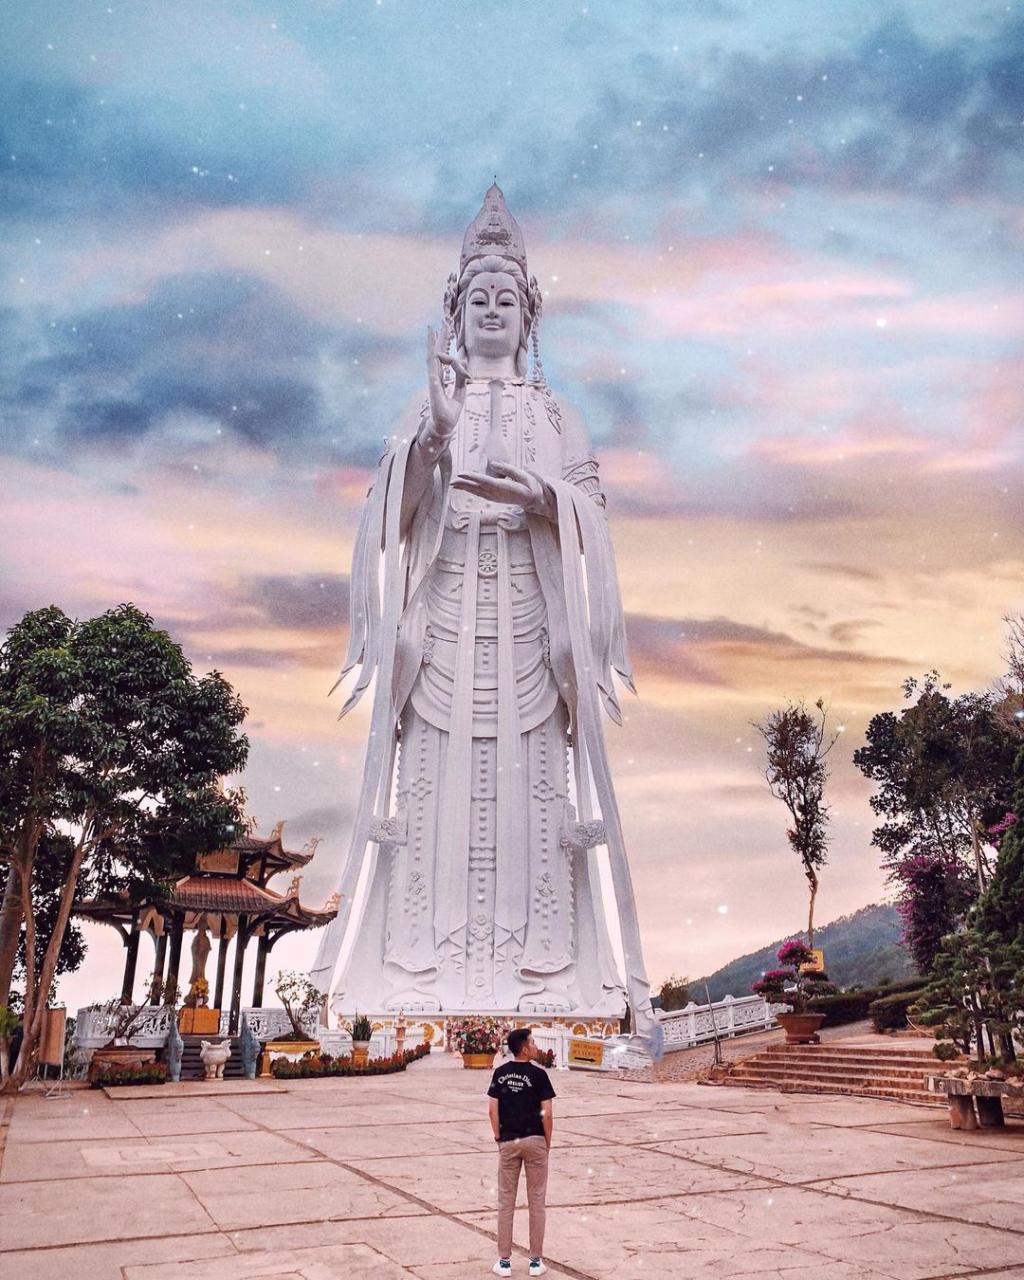 Statue of Quan Âm at Linh Ẩn Pagoda Dalat